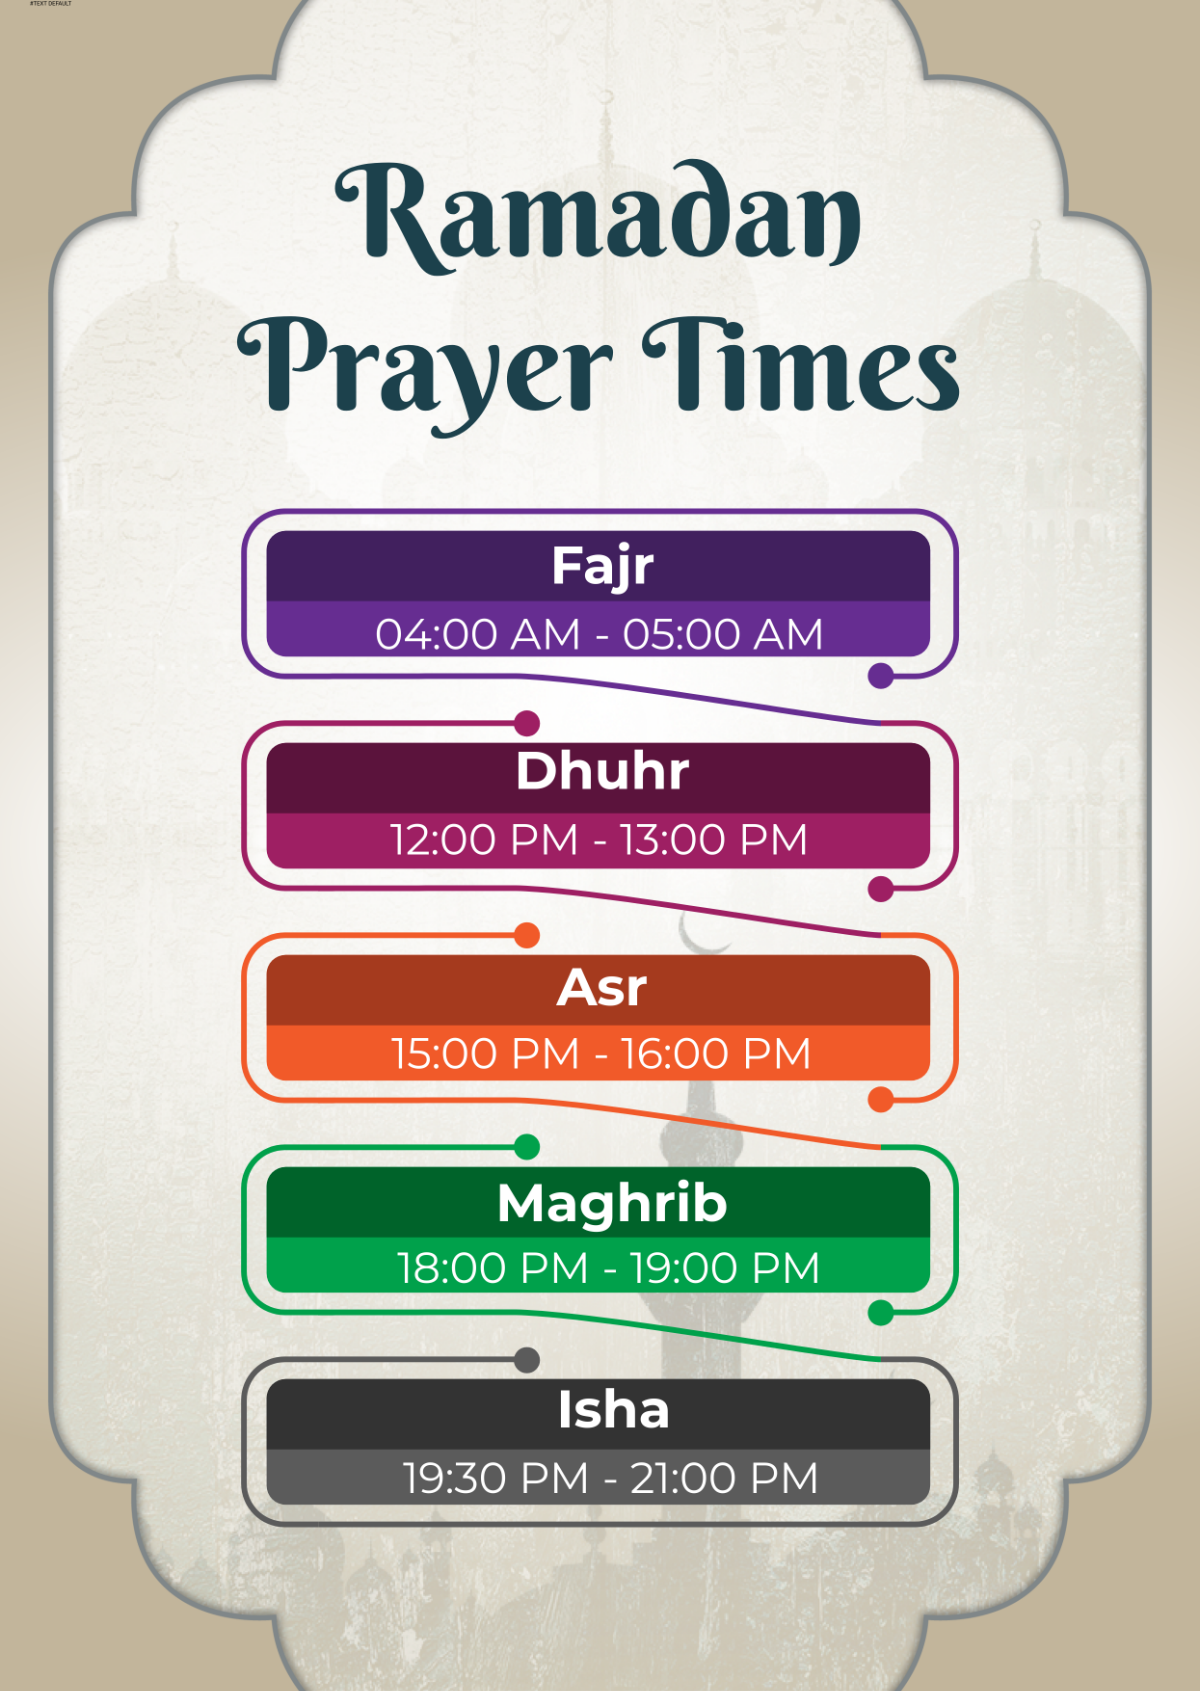 Free Islamic Prayer Times in Ramadan Template